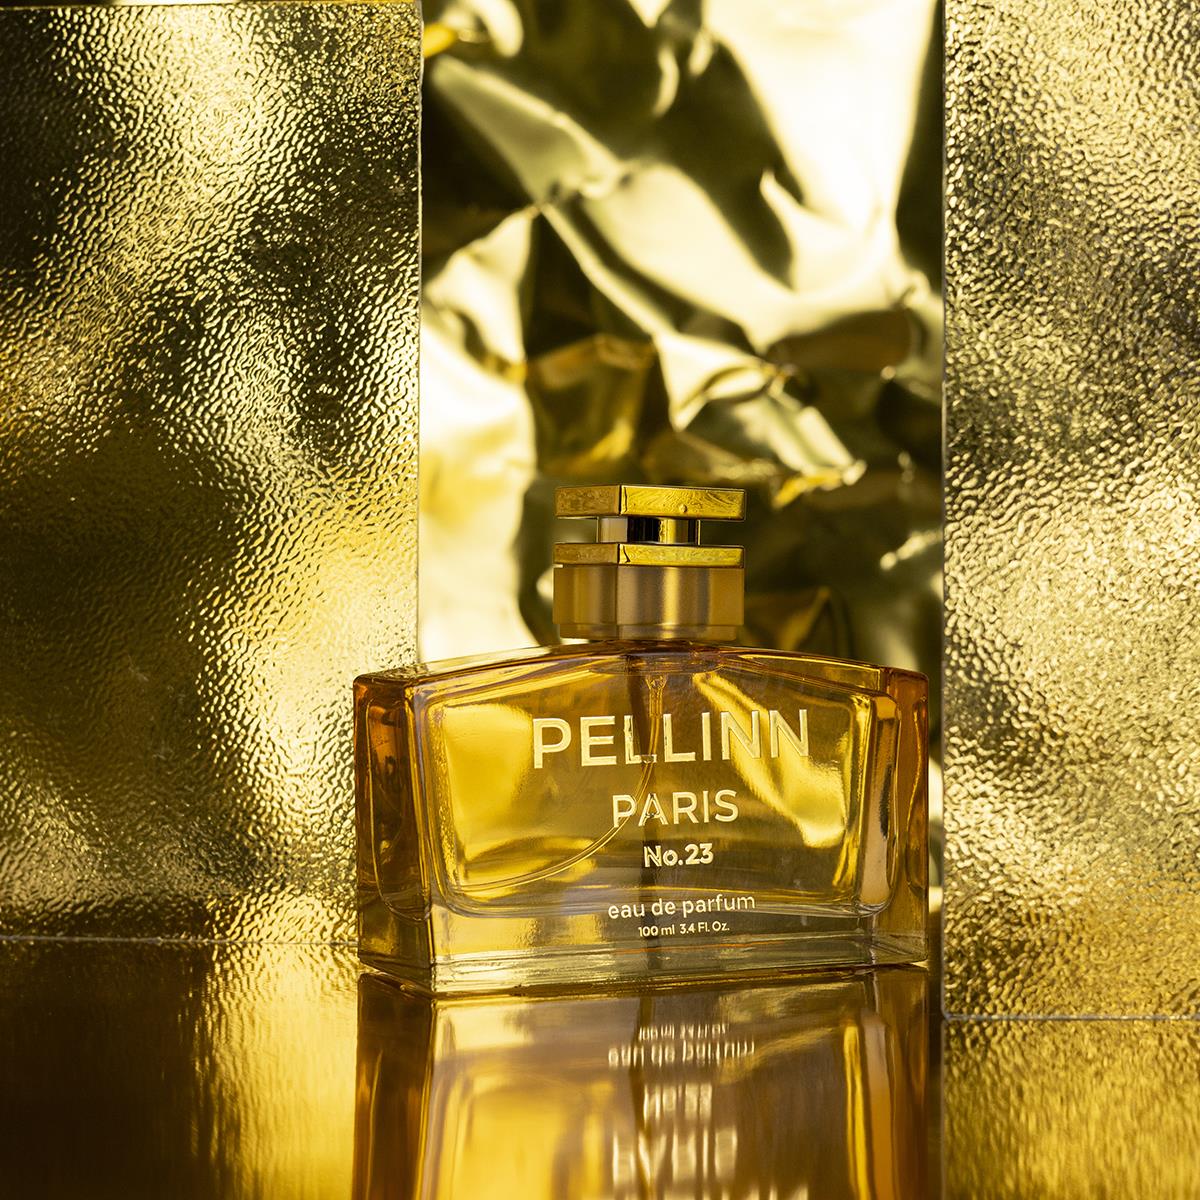 Pellinn Paris No.23 Çiçeksi Kadın EDP Parfüm 100 ml  Pellinn Paris Parfüm